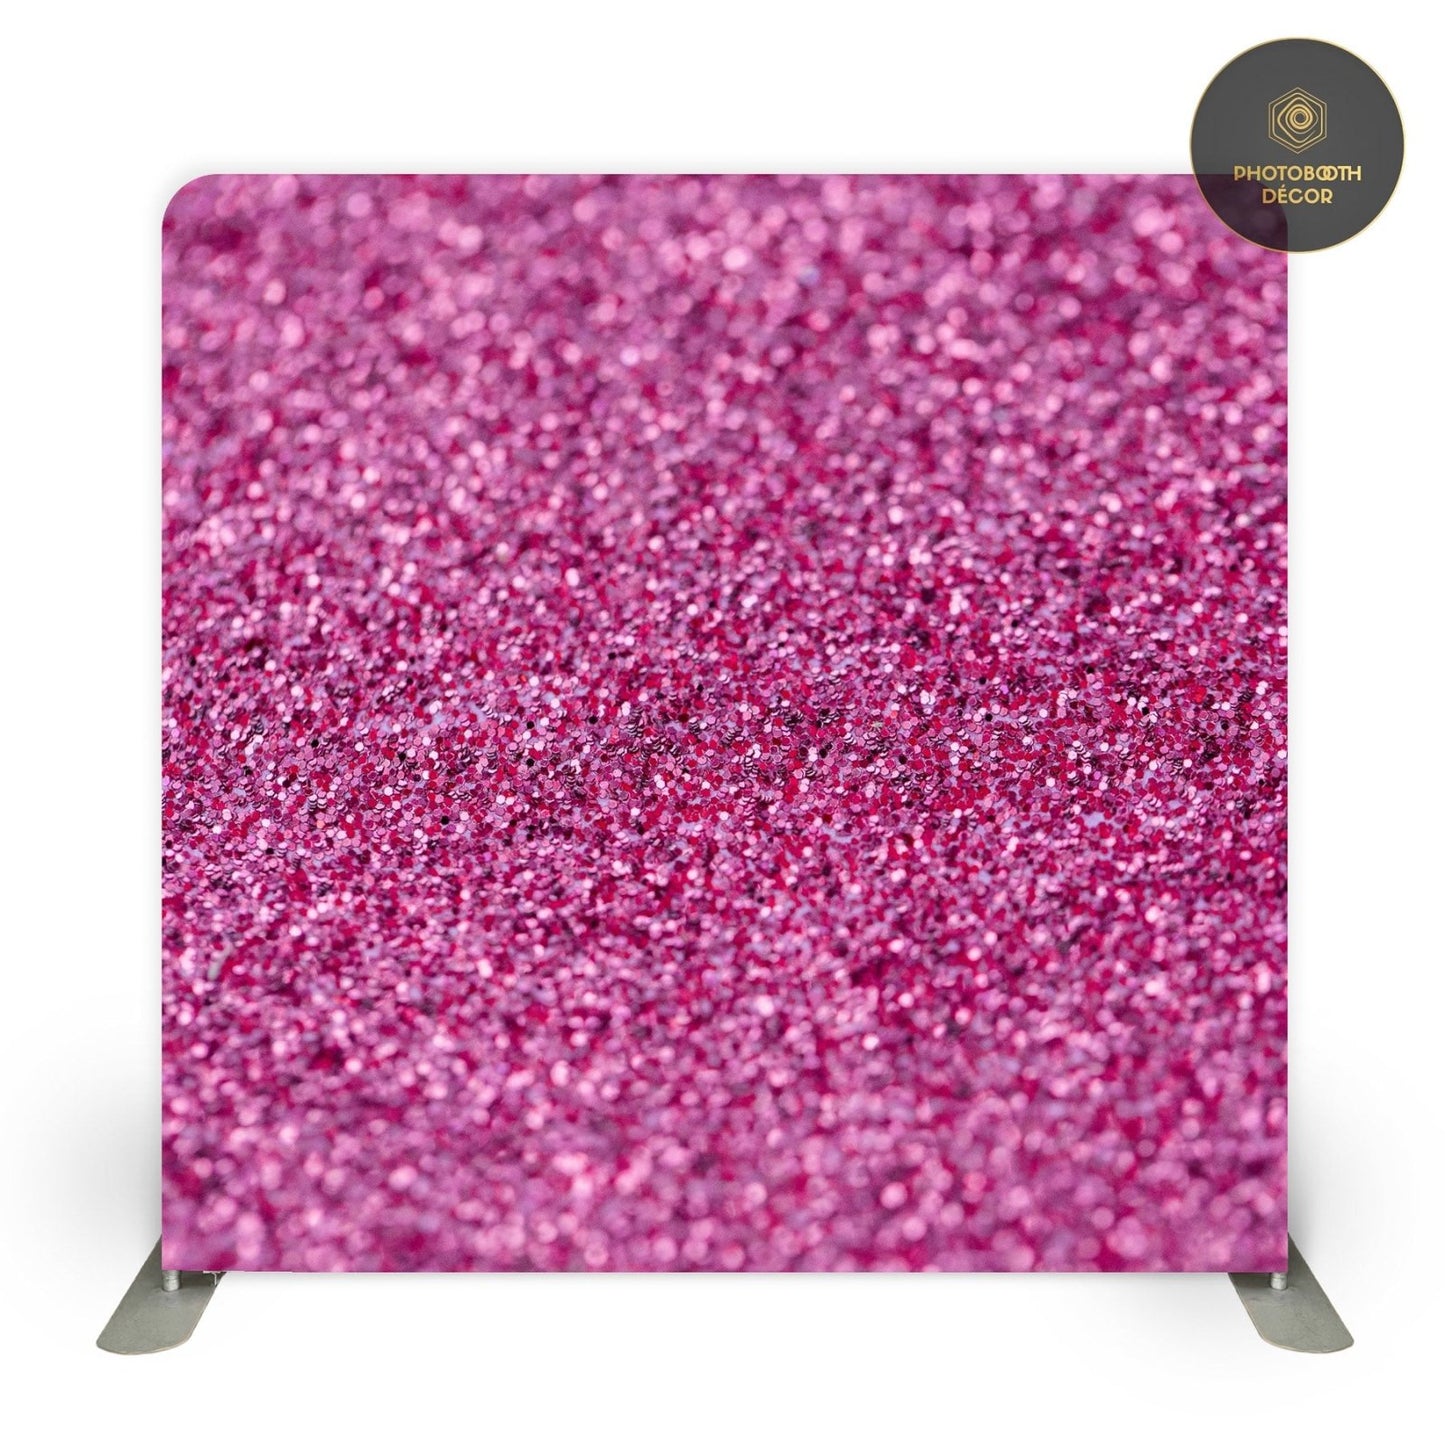 Sparkles - Pink Diamond Dust - Photobooth Décor